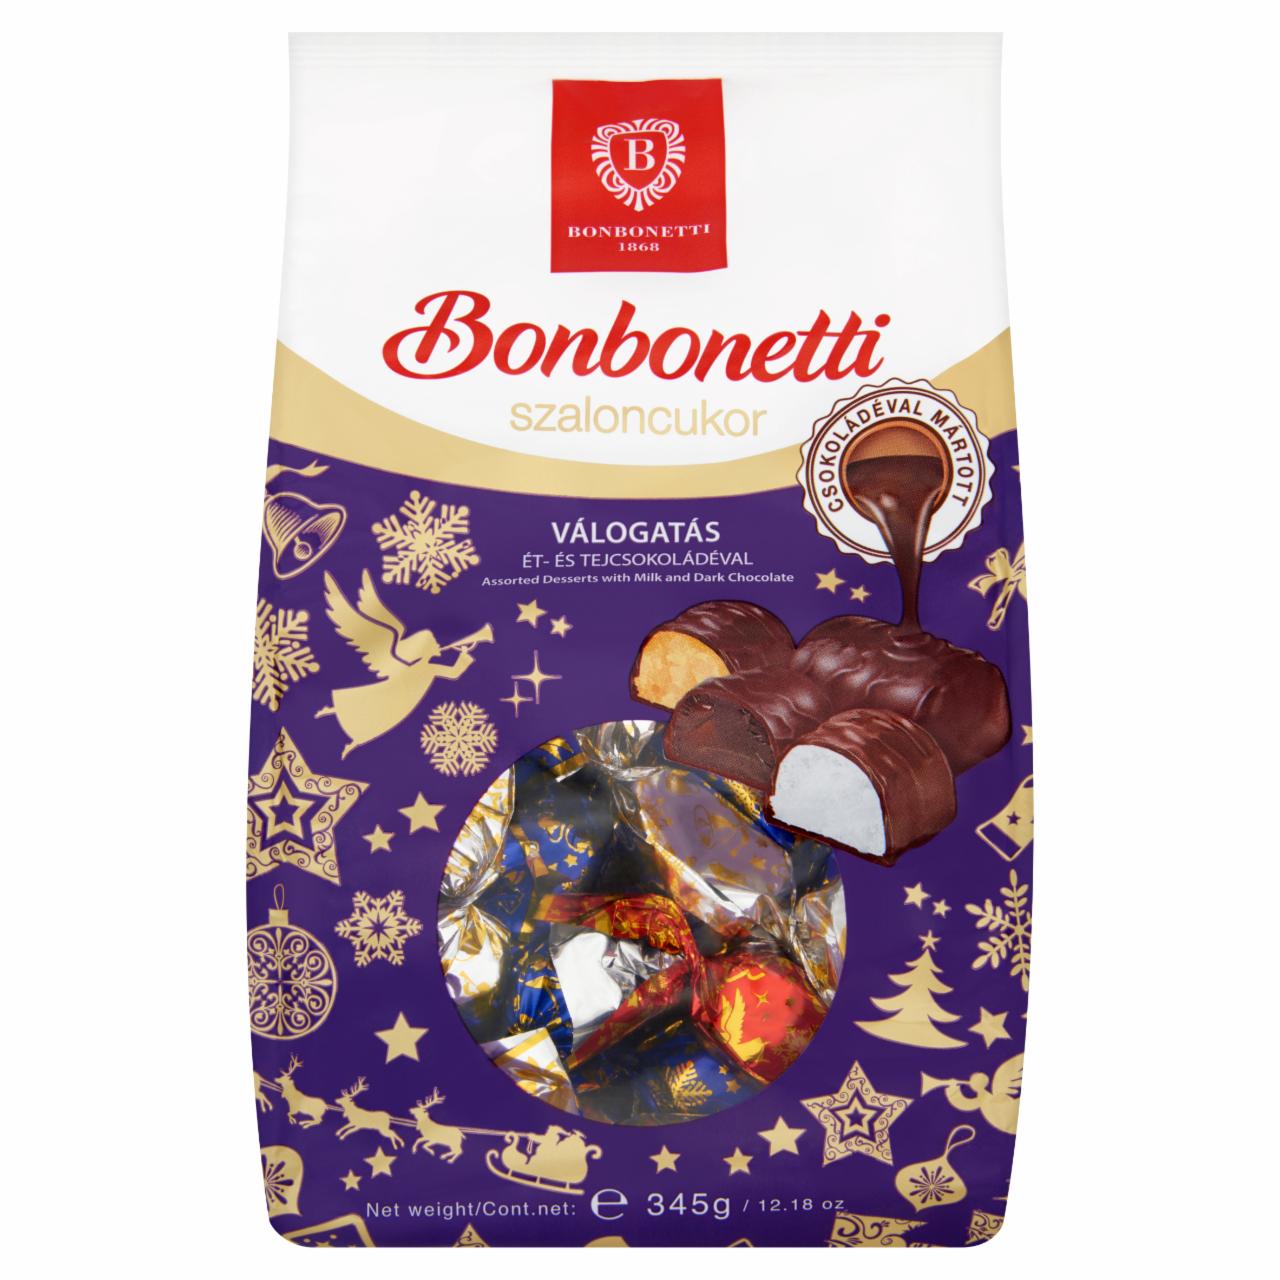 Képek - Bonbonetti ét- és tejcsokoládéval mártott szaloncukor válogatás 345 g